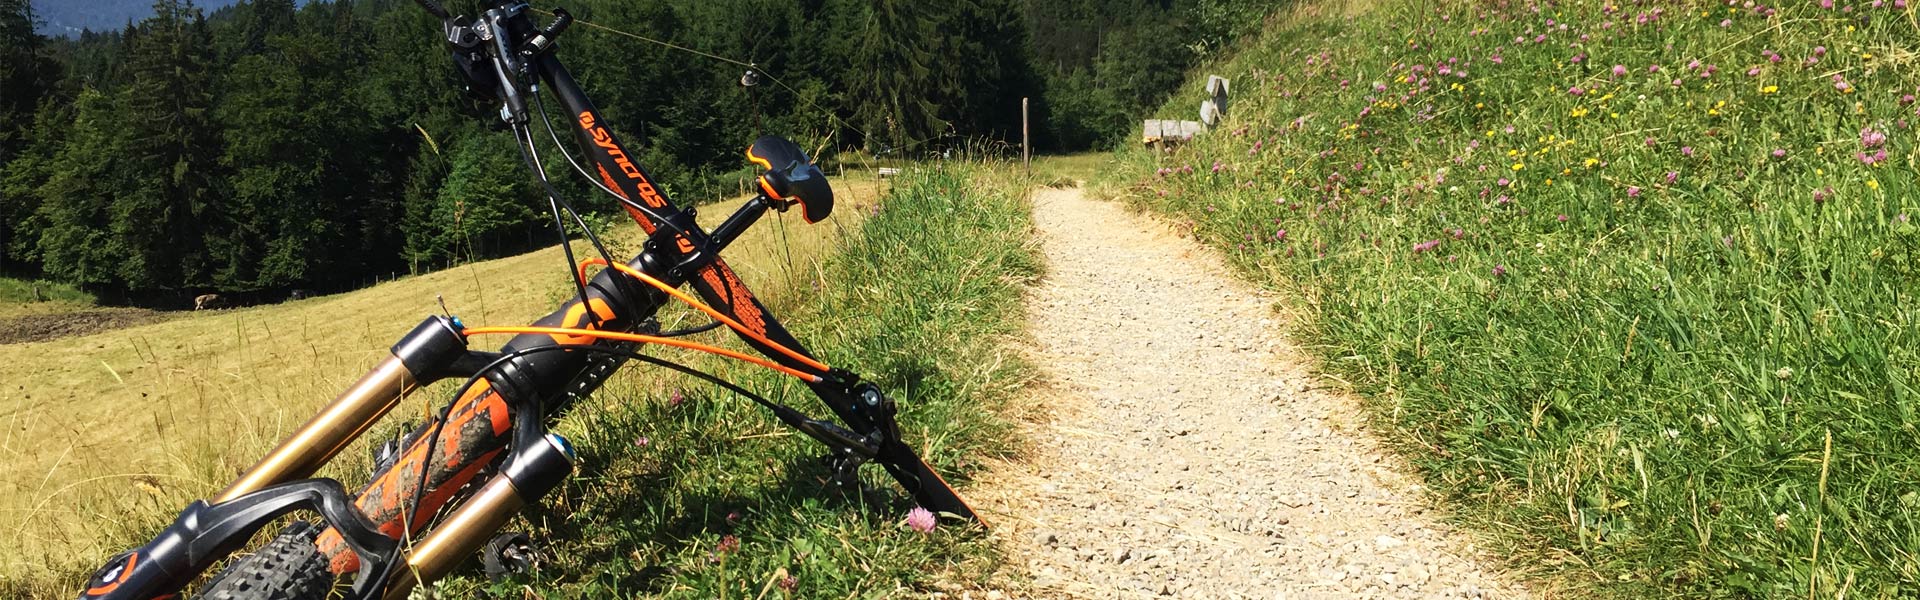 aursütung und hinweise fur richtiges mountainbiken im Allgäu ist die Bike und MTB Ausrüstung sehr wichtig